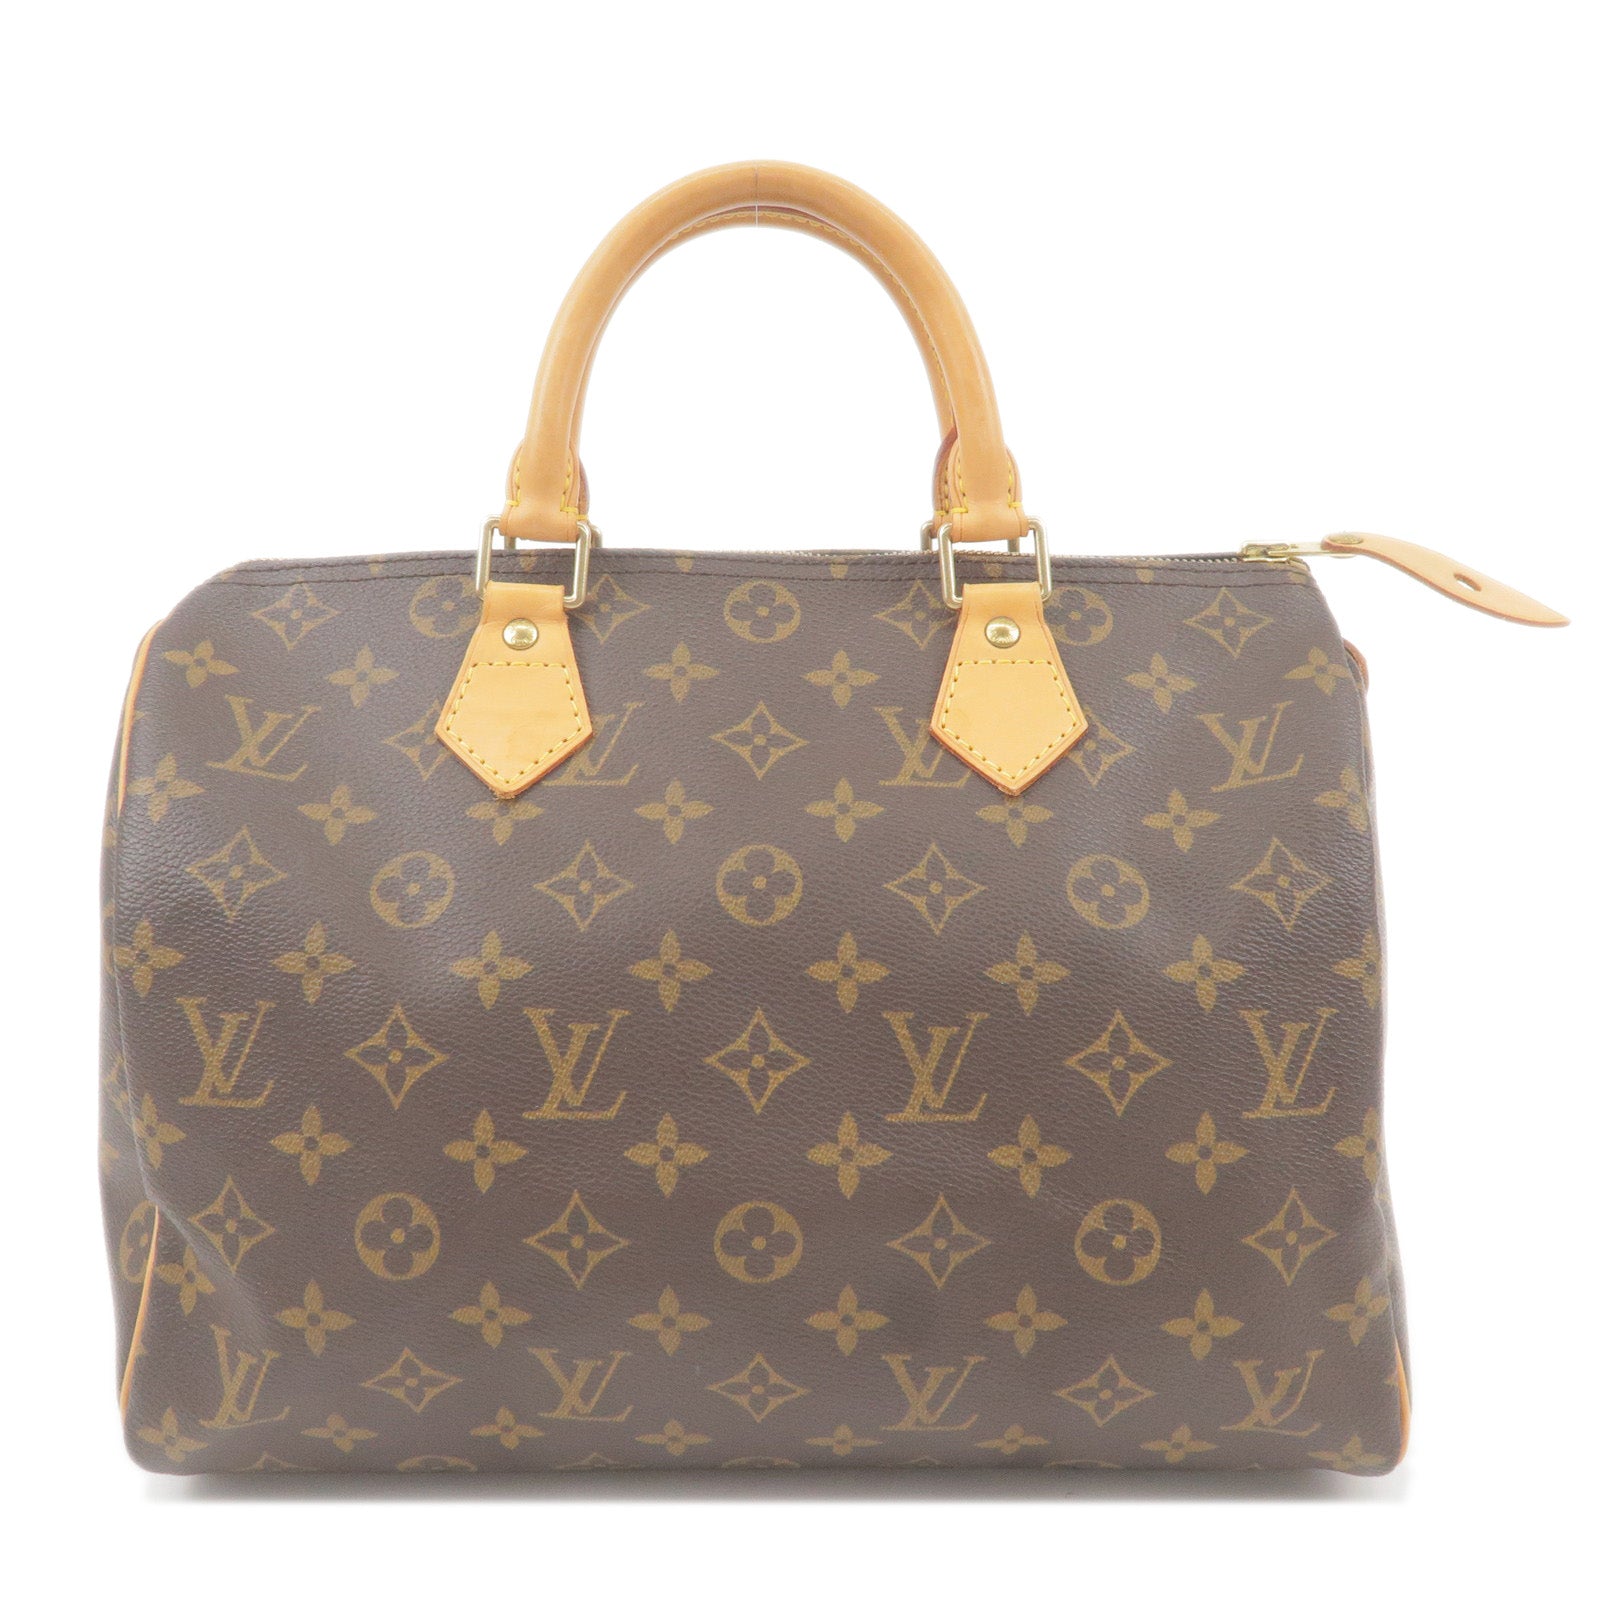 Louis Vuitton Speedy 30 Boston Bag